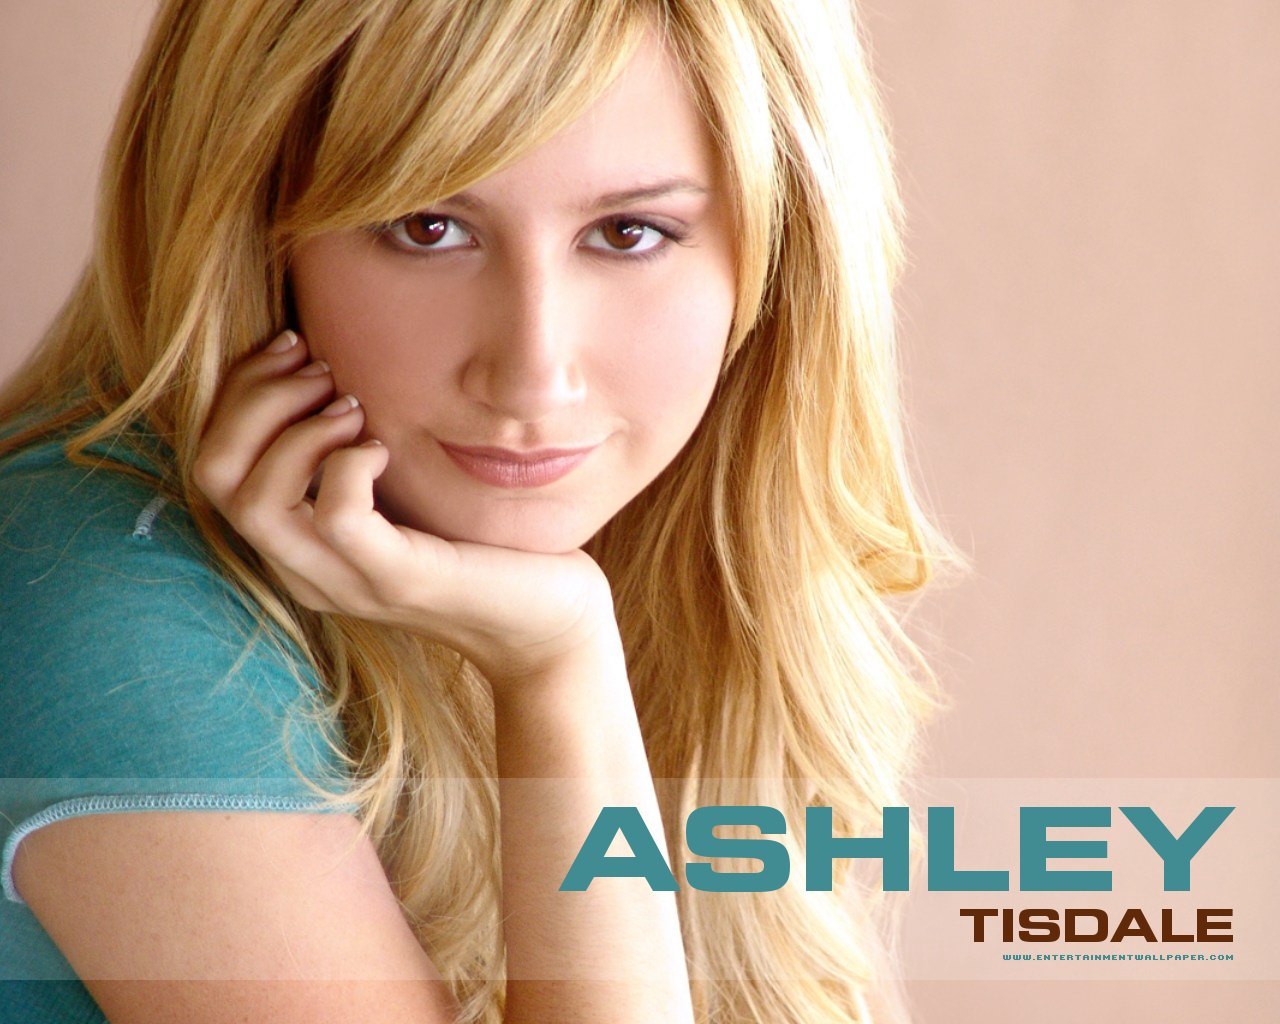 http://images1.fanpop.com/images/image_uploads/Ashley-Tisdale-ashley-tisdale-948193_1280_1024.jpg